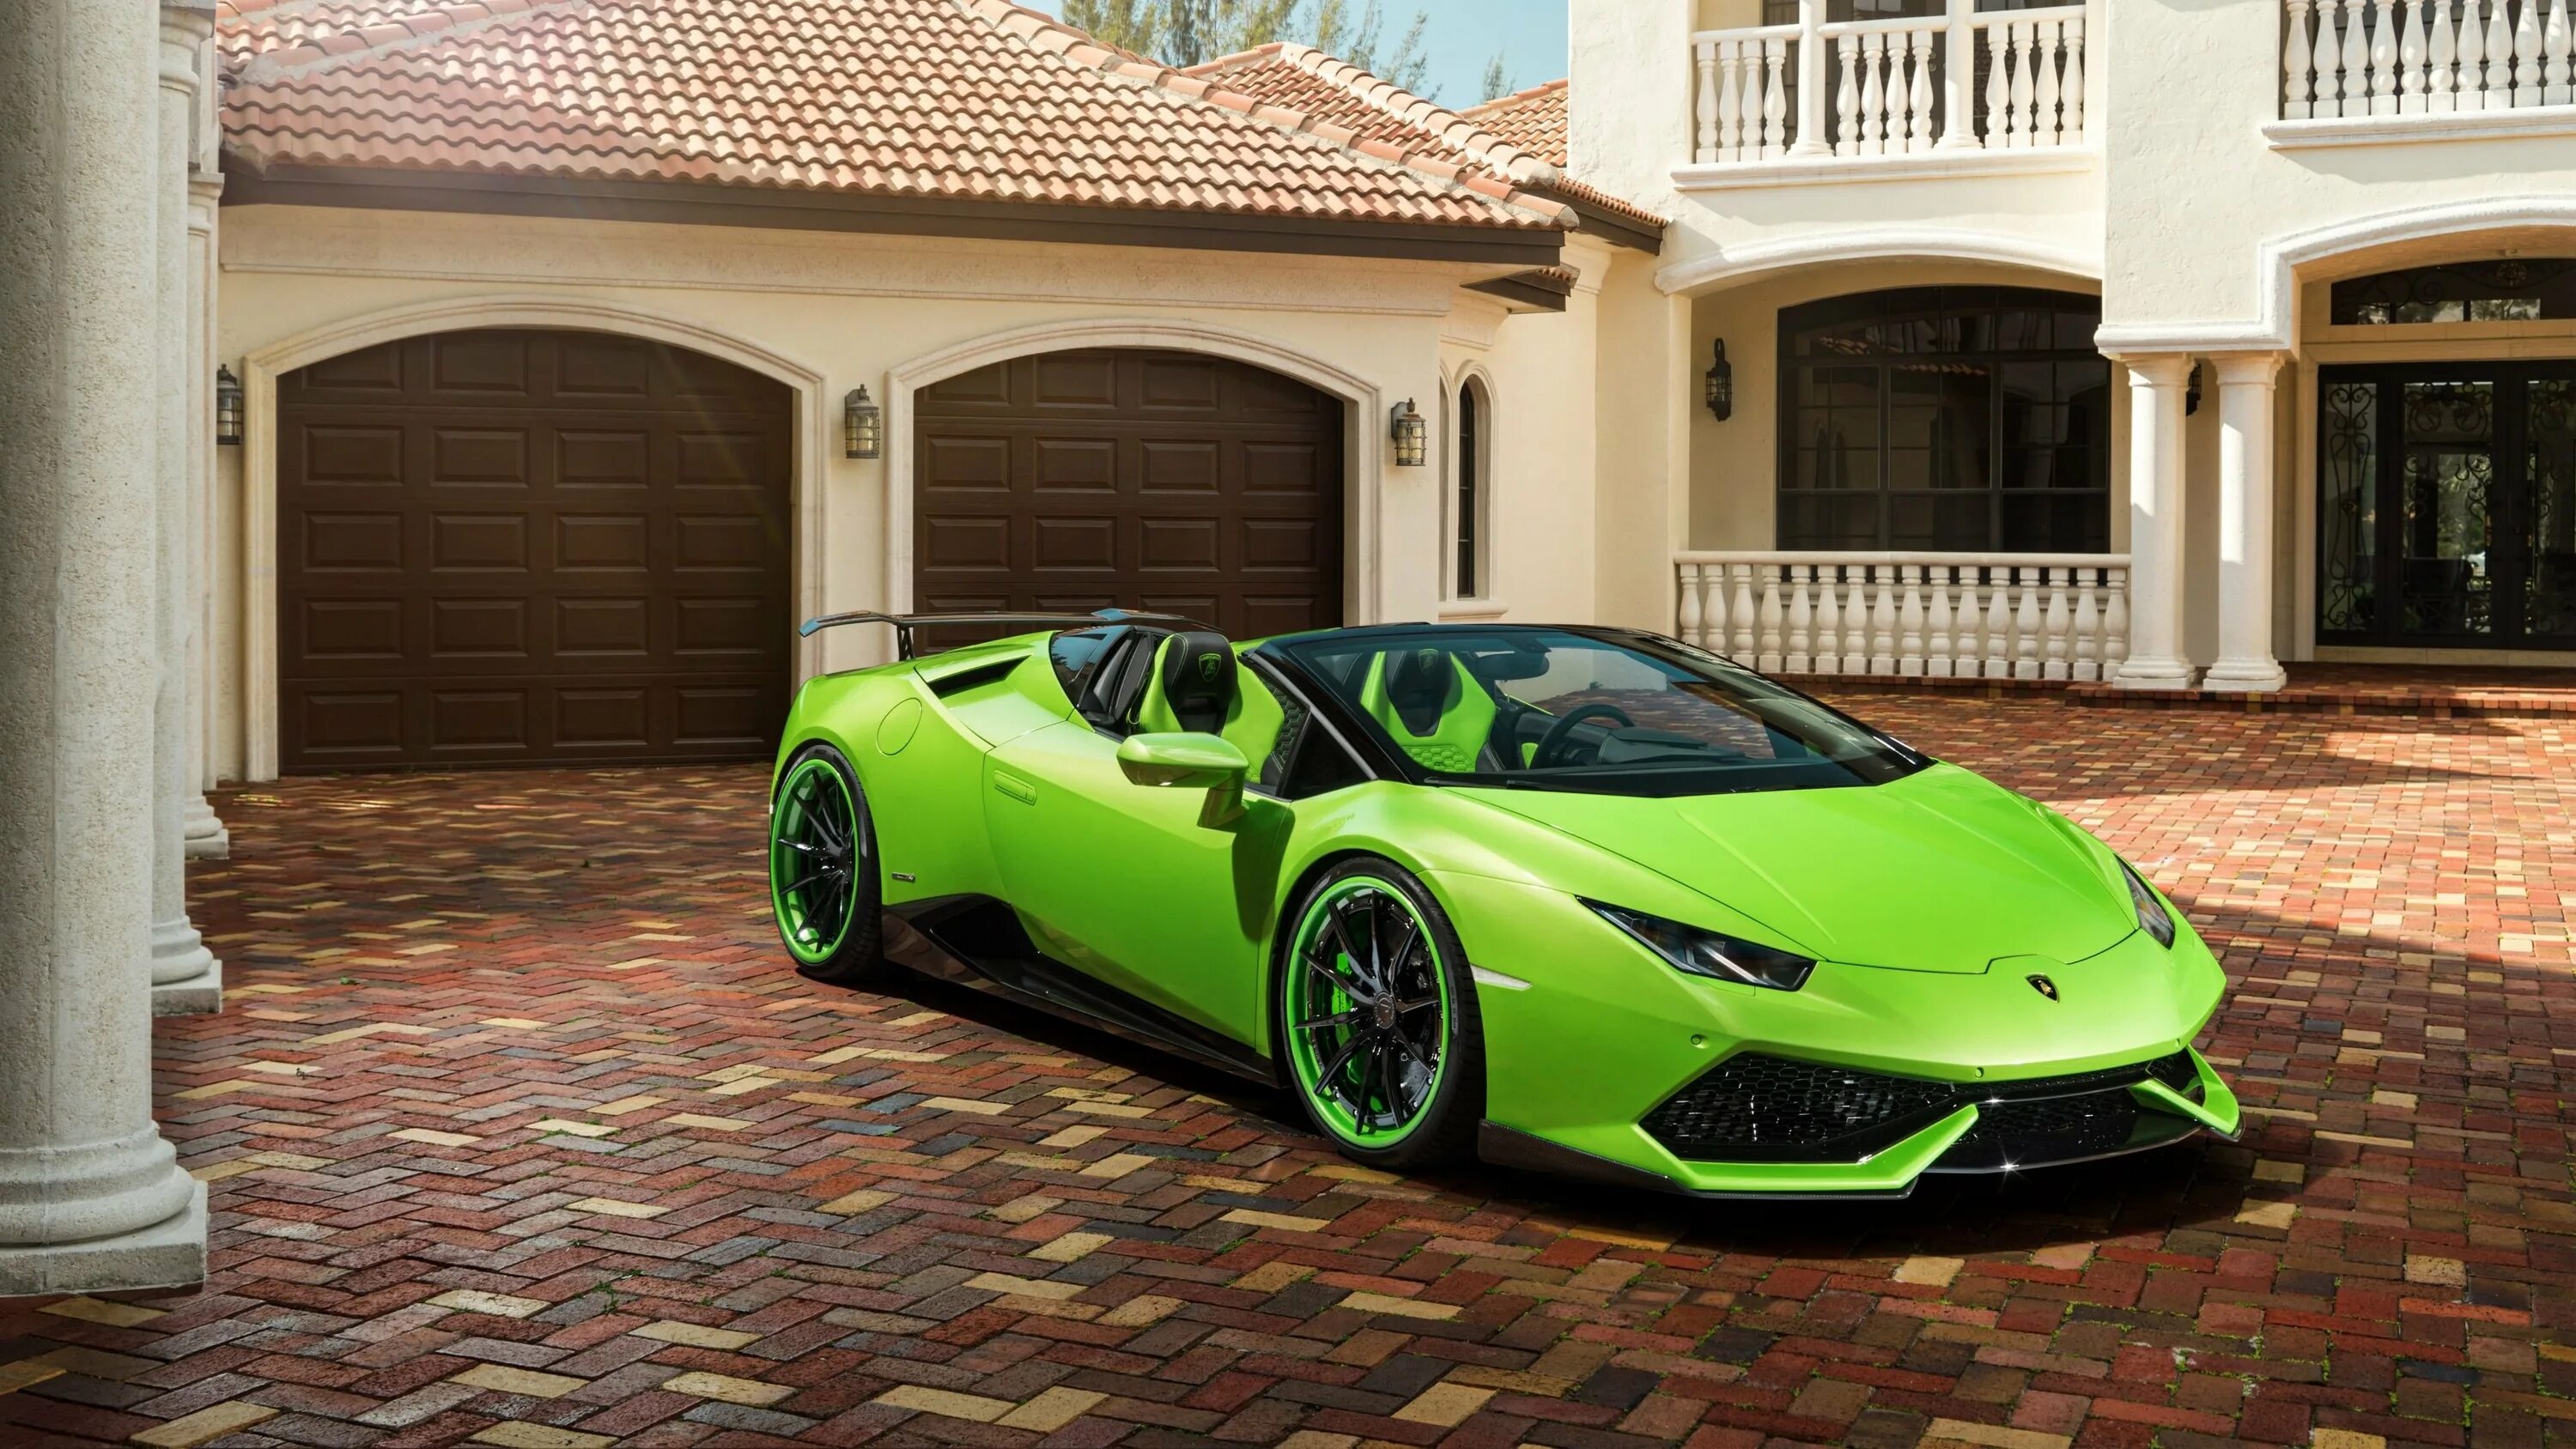 Ламборджини Хуракан зеленая. Ламборгини Хуракан салатовая. Ламборгини авентадор зеленая. Lamborghini Huracan 3 зеленый.